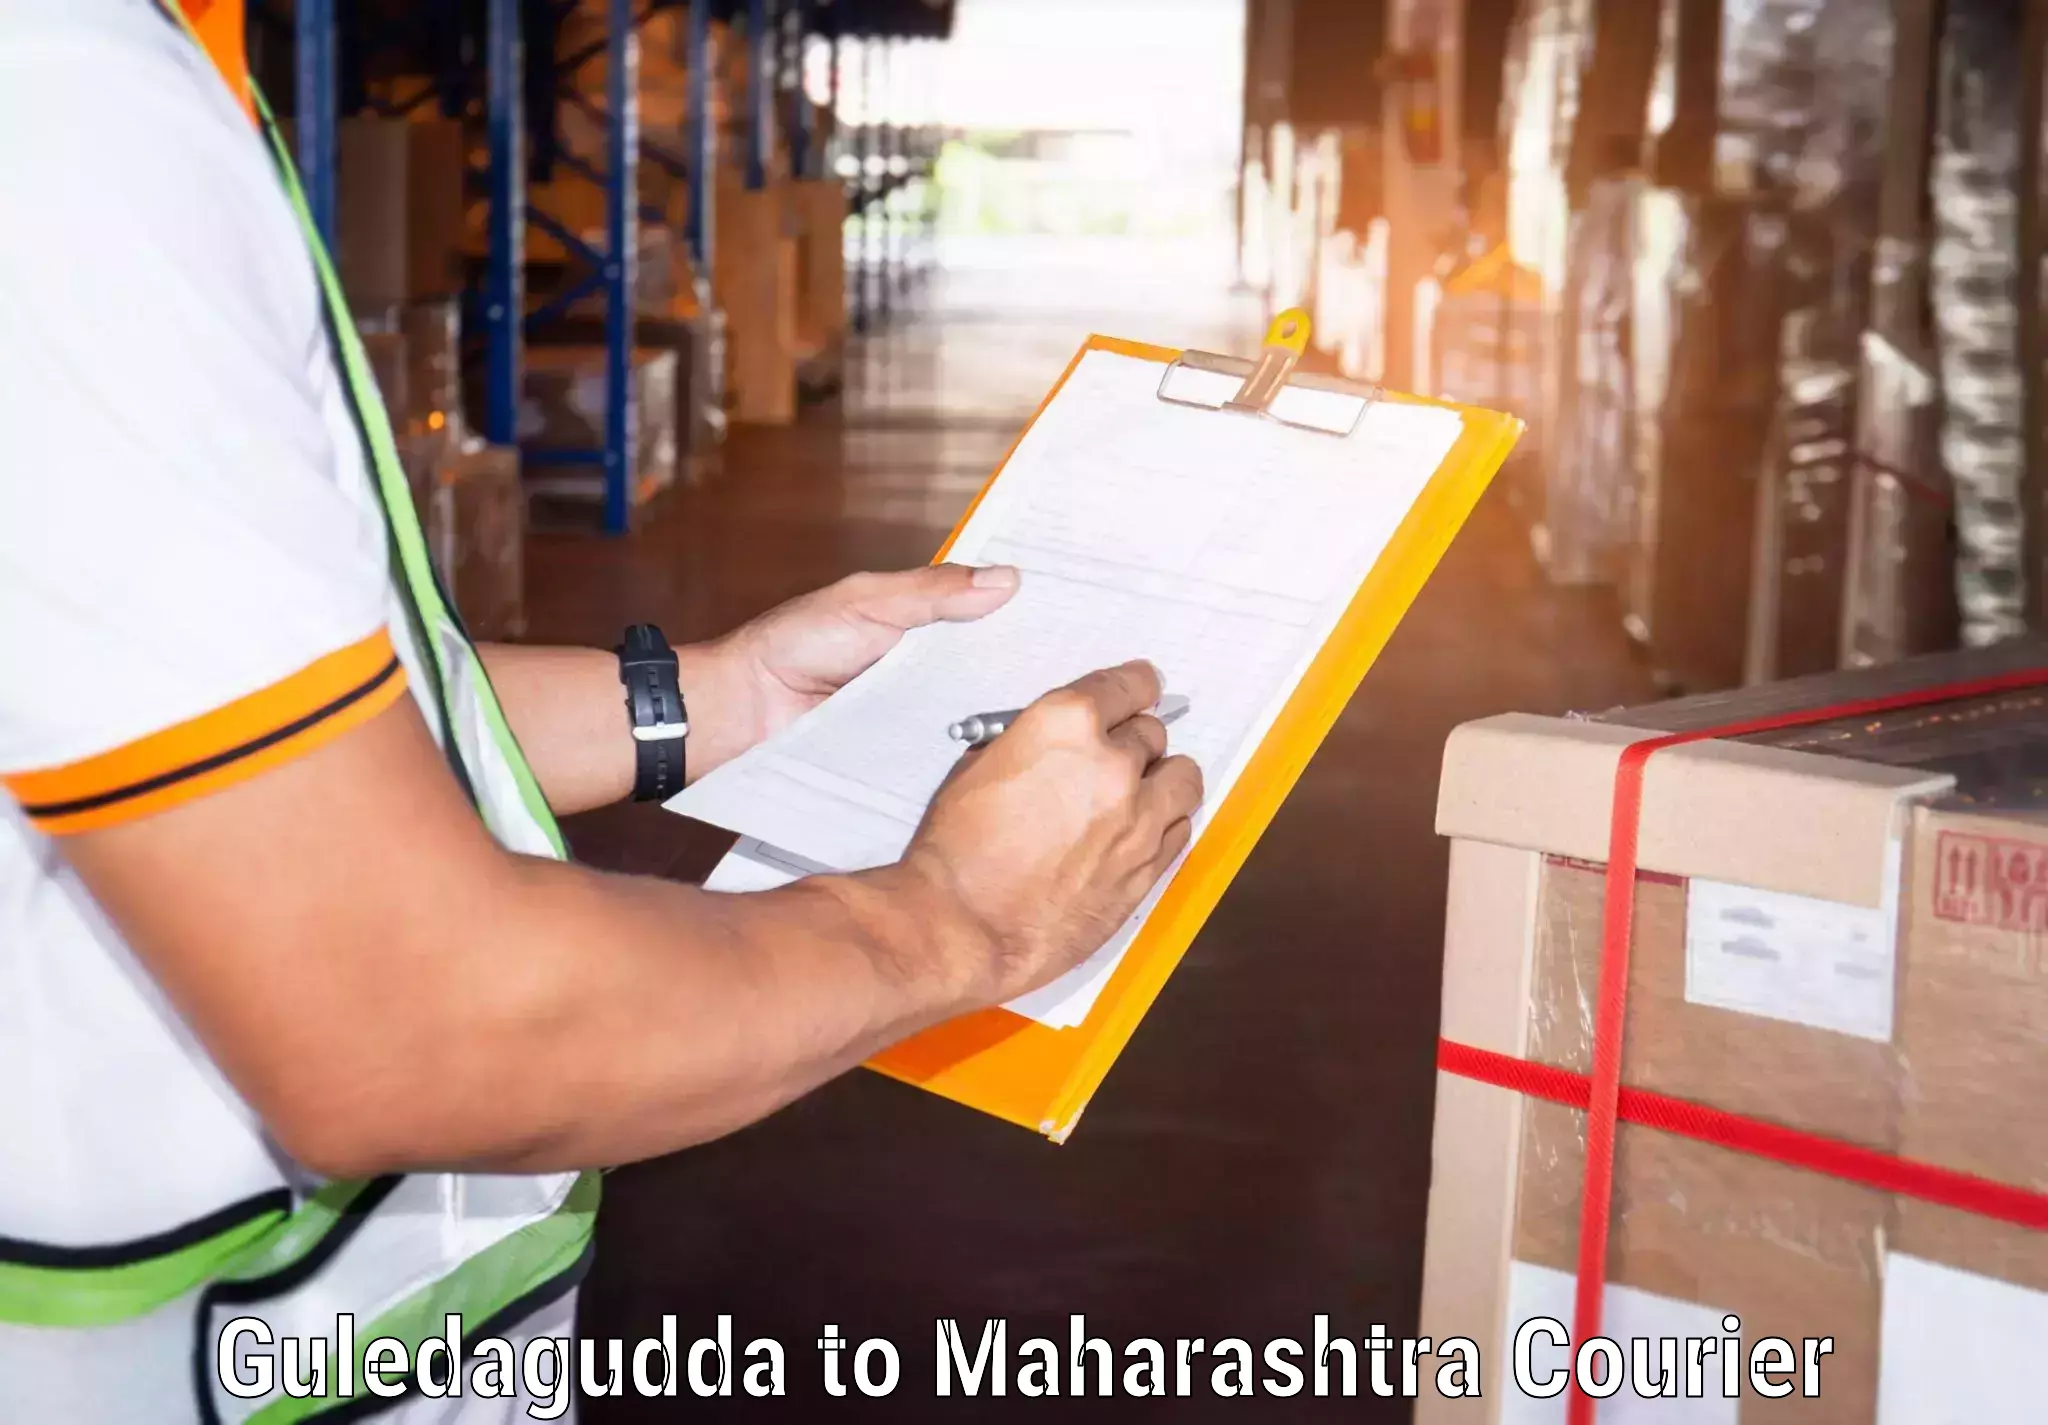 Automated parcel services Guledagudda to Maharashtra